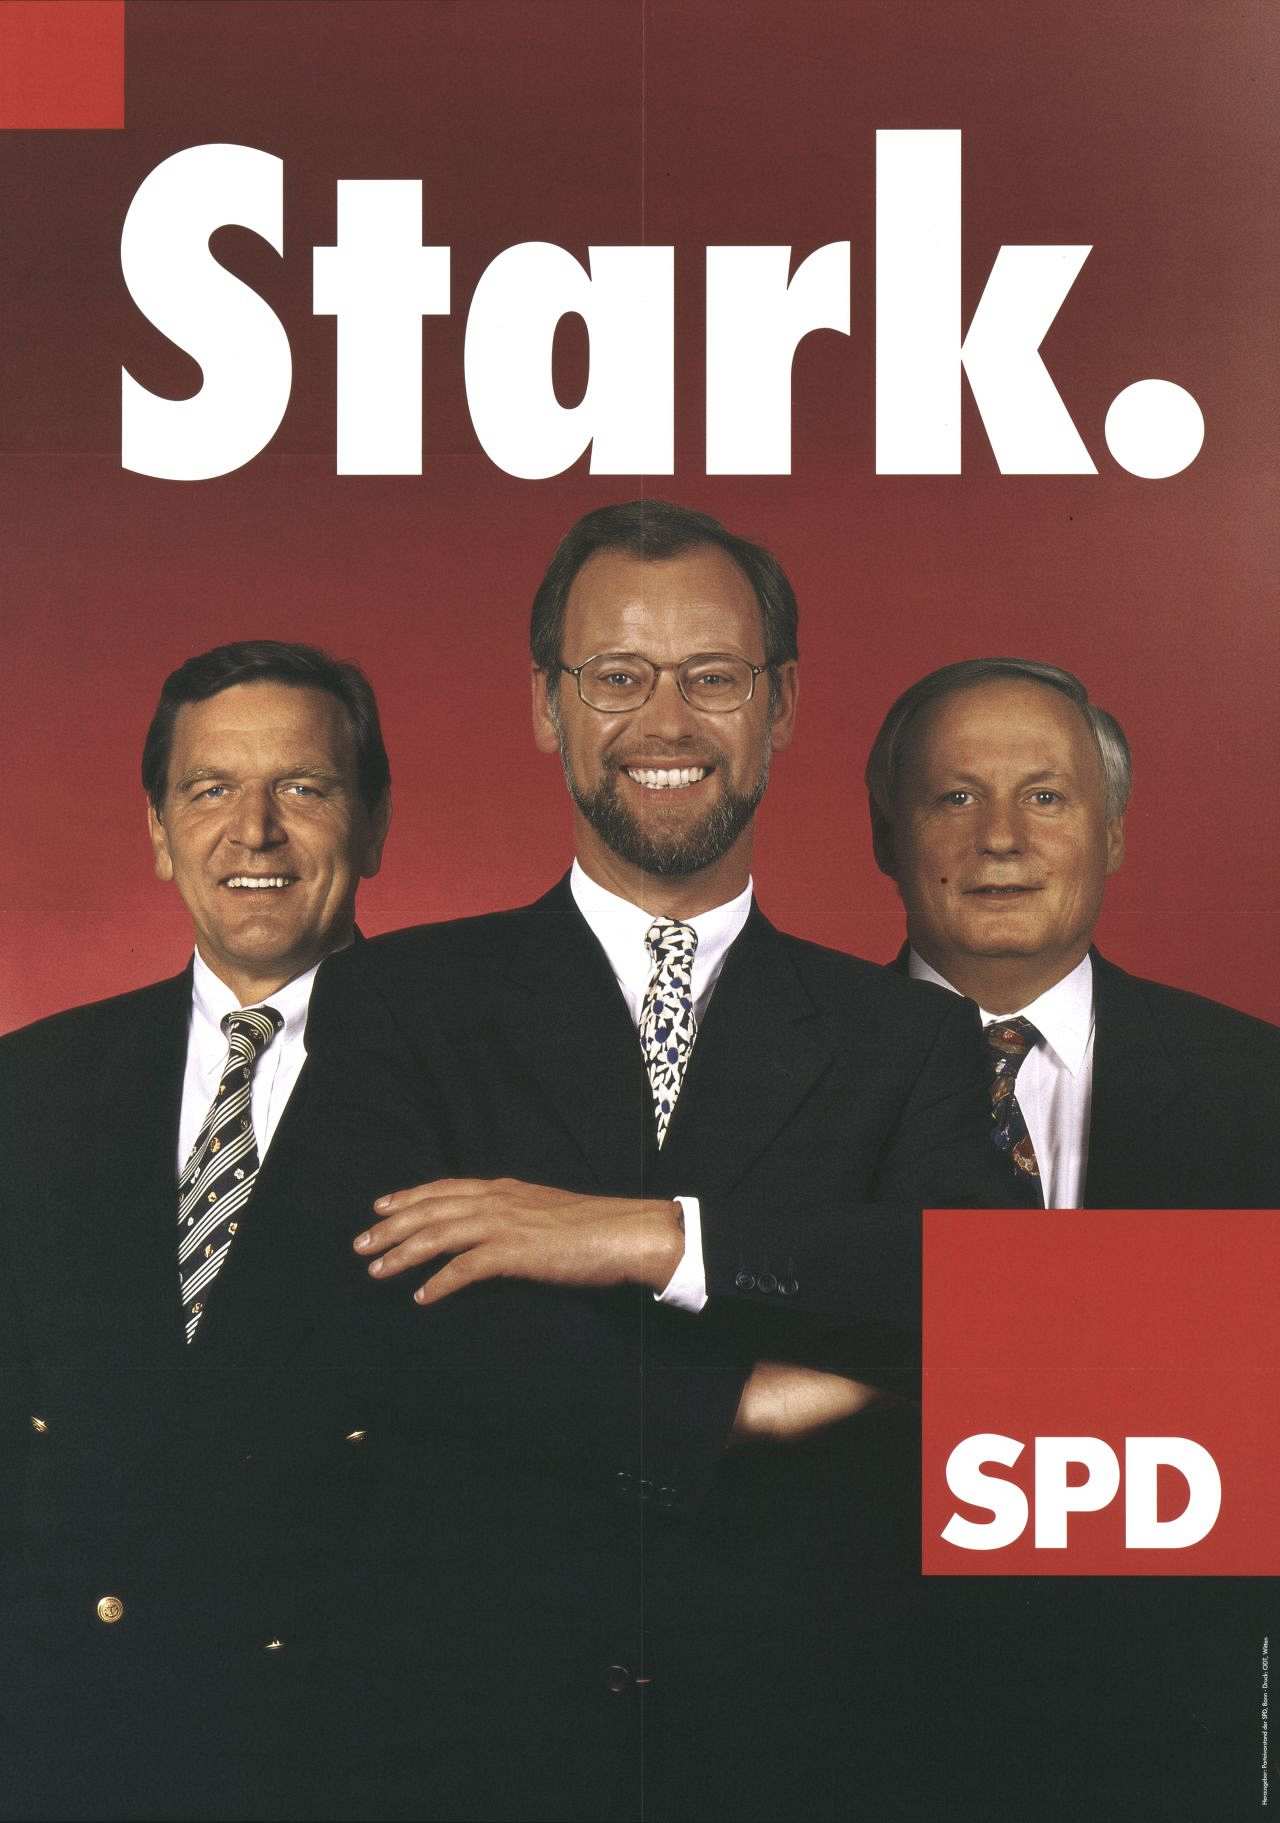 Rotgrundig; Motiv: Gerhard Schröder, Rudolf Scharping und Oskar Lafontaine, stehend (Farbfoto); darüber: Stark. (weiß); unten rechts rotes Quadrat mit weißem Text: SPD.